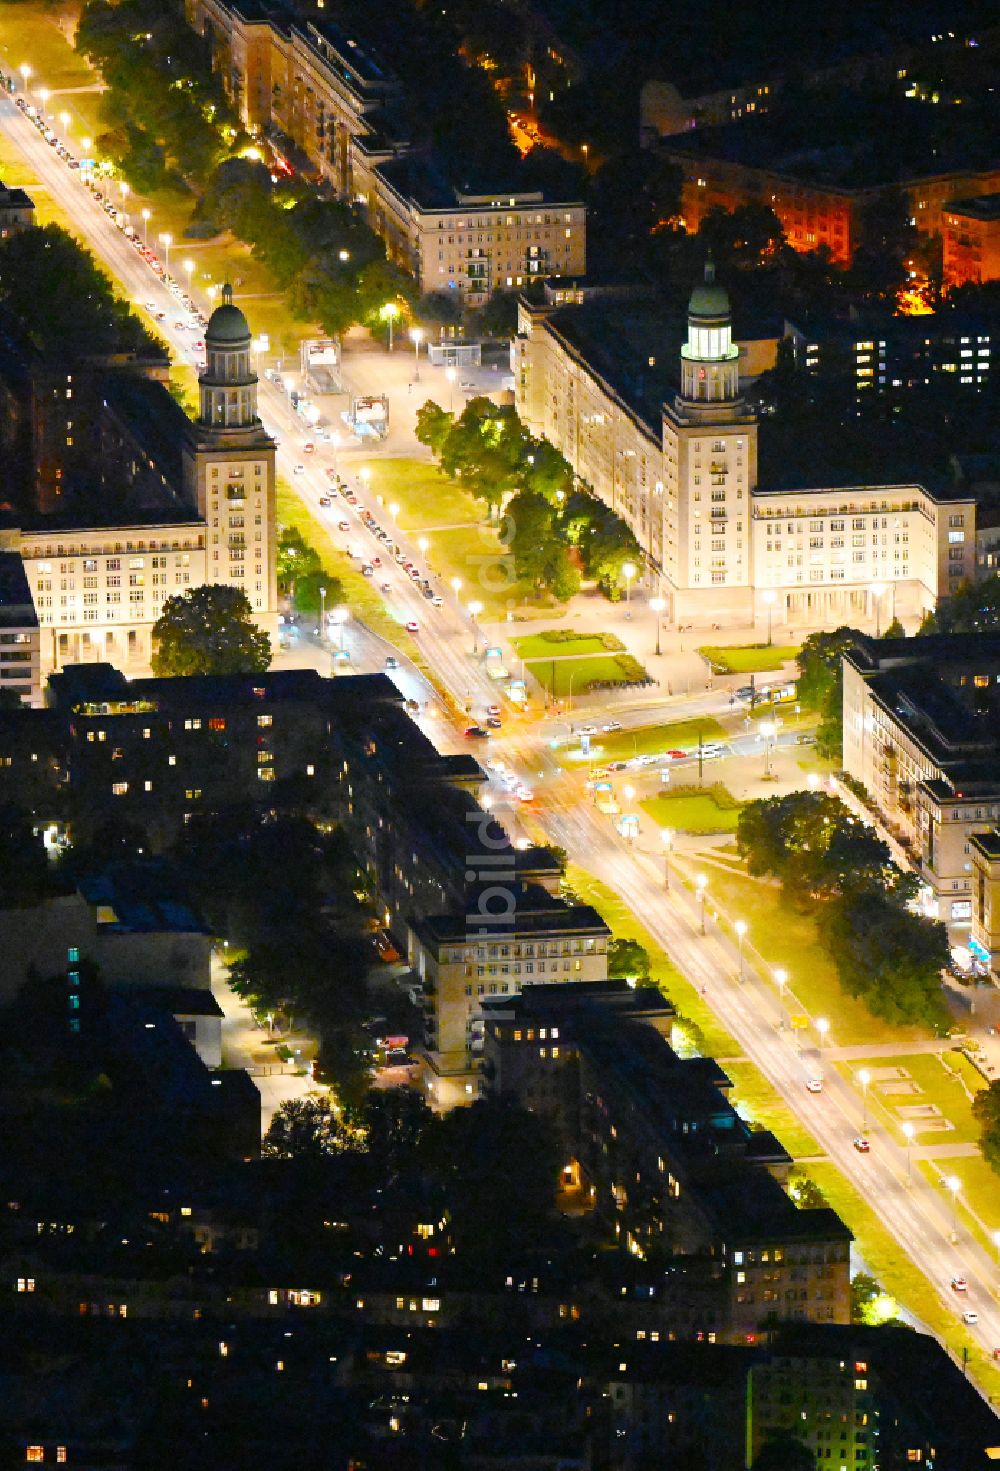 Nacht-Luftaufnahme Berlin - Nachtluftbild Straßenführung der bekannten Flaniermeile und Einkaufsstraße Frankfurter Allee mit dem Platz Frankfurter Tor und dem Kinogebäude KOSMOS in Berlin